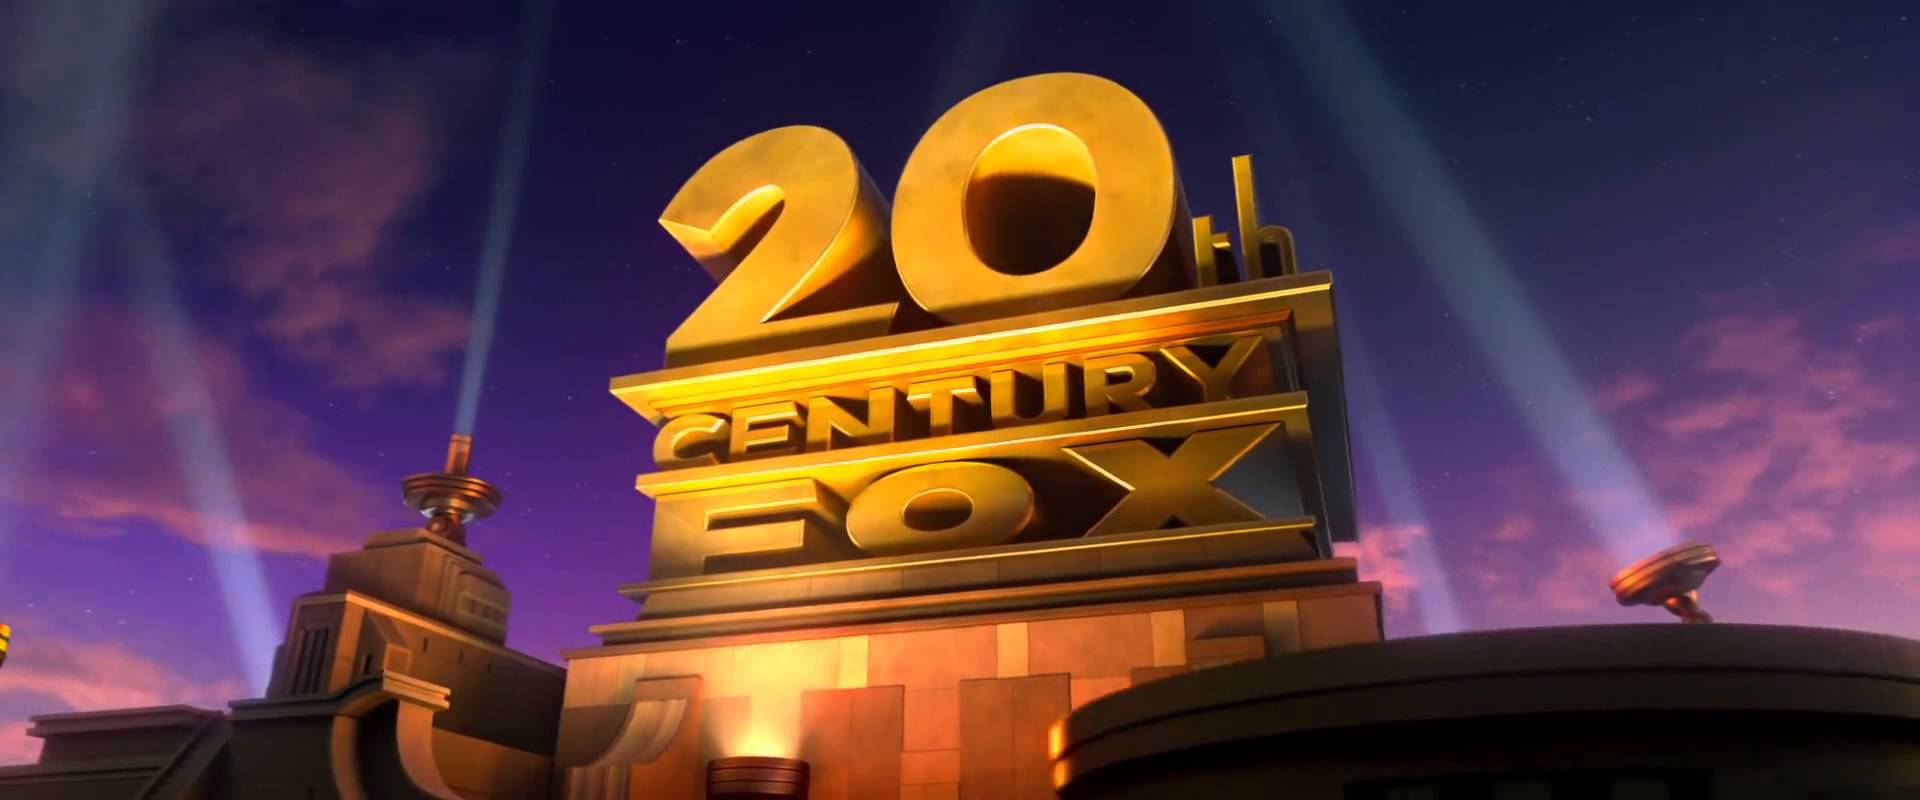 Disney acquista la 20th Century Fox per 52,4 miliardi di dollari